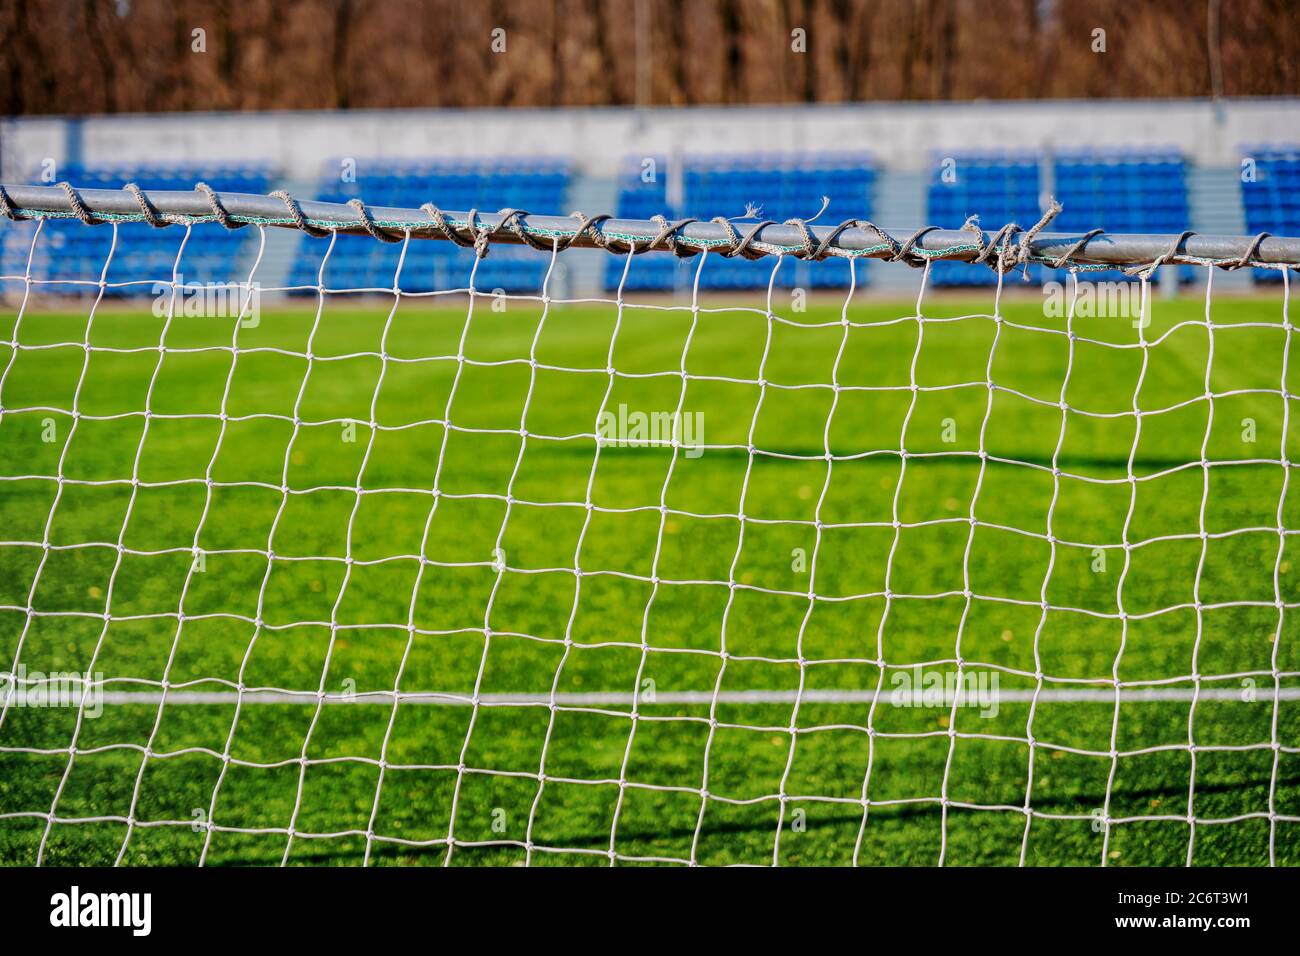 Accent sélectif sur le football - le but de football net contre le terrain vert et les sièges, thème sportif Banque D'Images